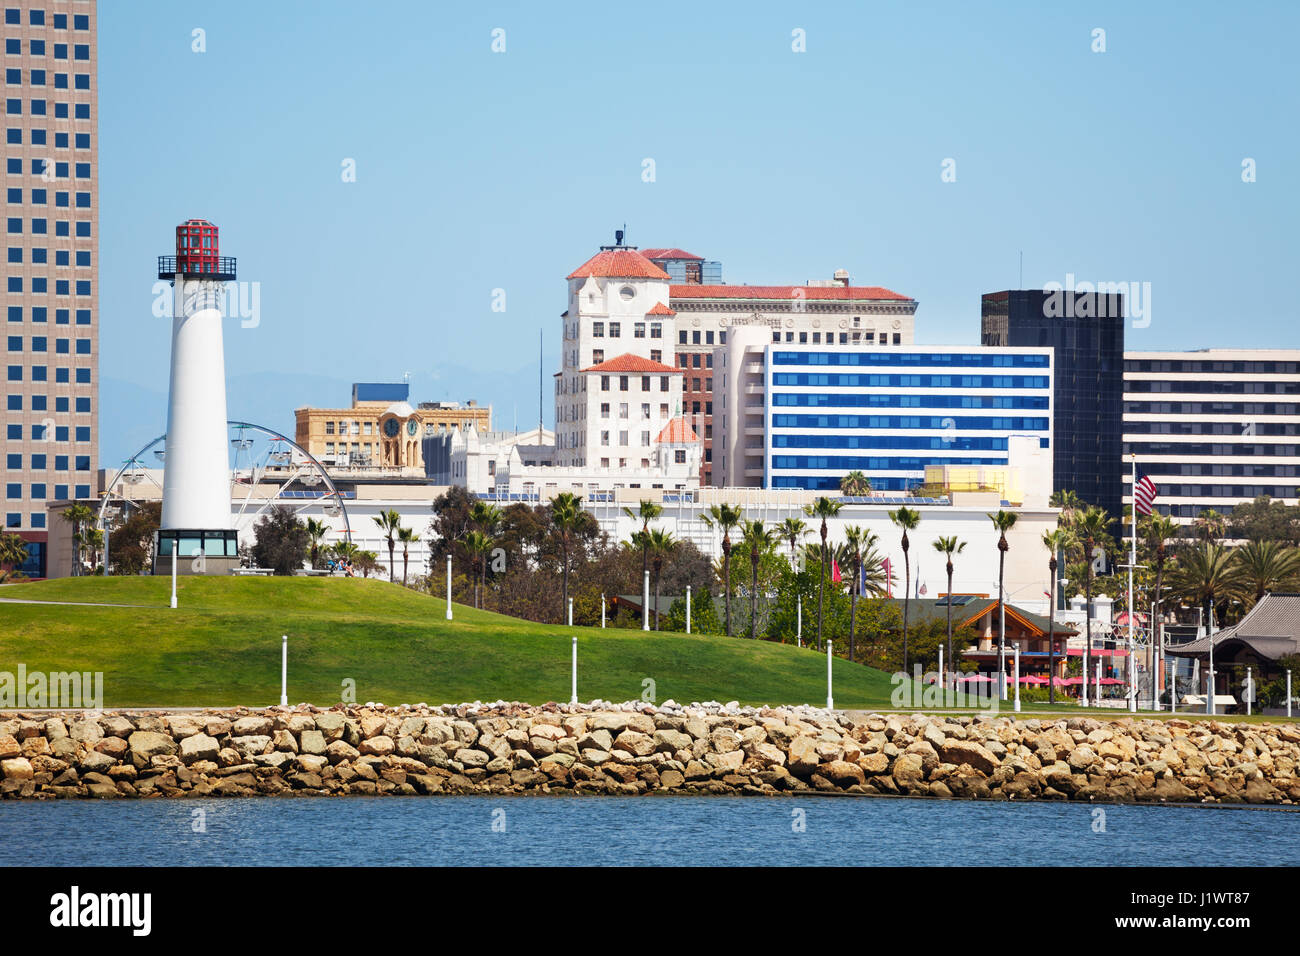 Paesaggio cittadino di Long Beach con il faro ad alta alzate, grattacieli e palme, STATI UNITI D'AMERICA Foto Stock